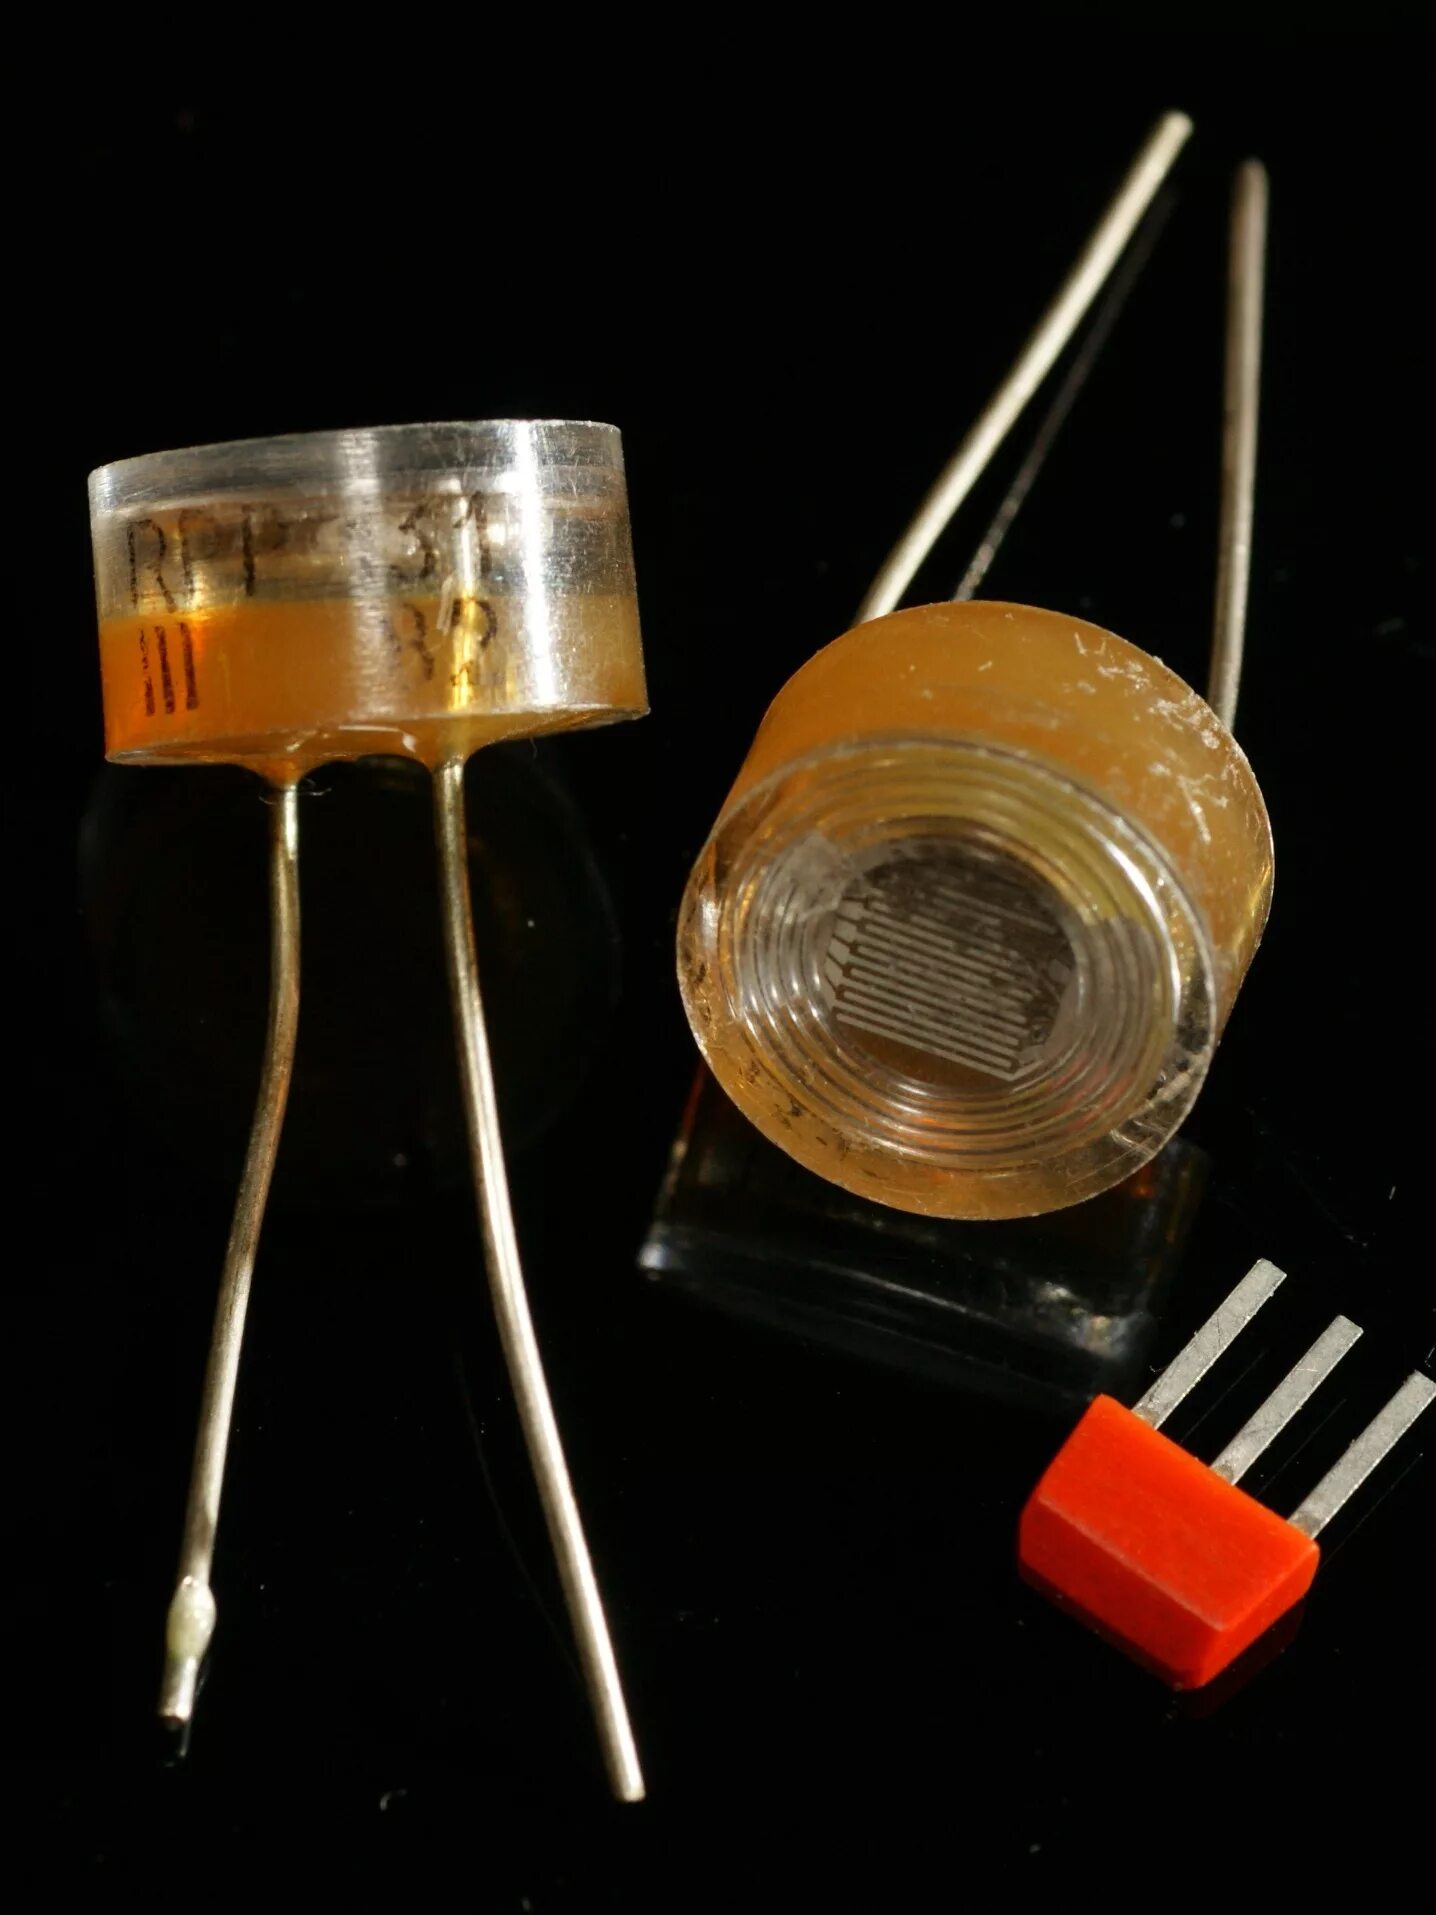 Rpp131 фоторезистор. Фоторезистор РПП 131. Вега 109 фоторезистор. Фоторезистор gl20615.